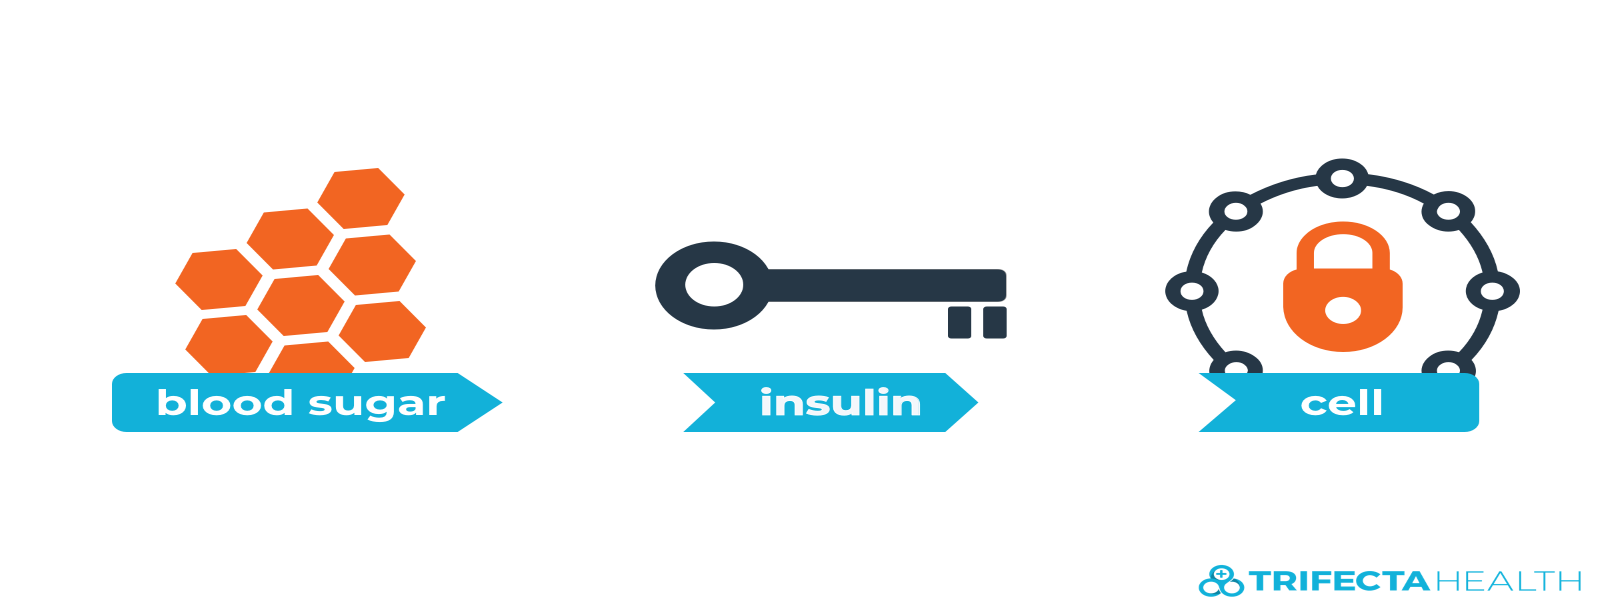 insulin_glucose_diabetes-2